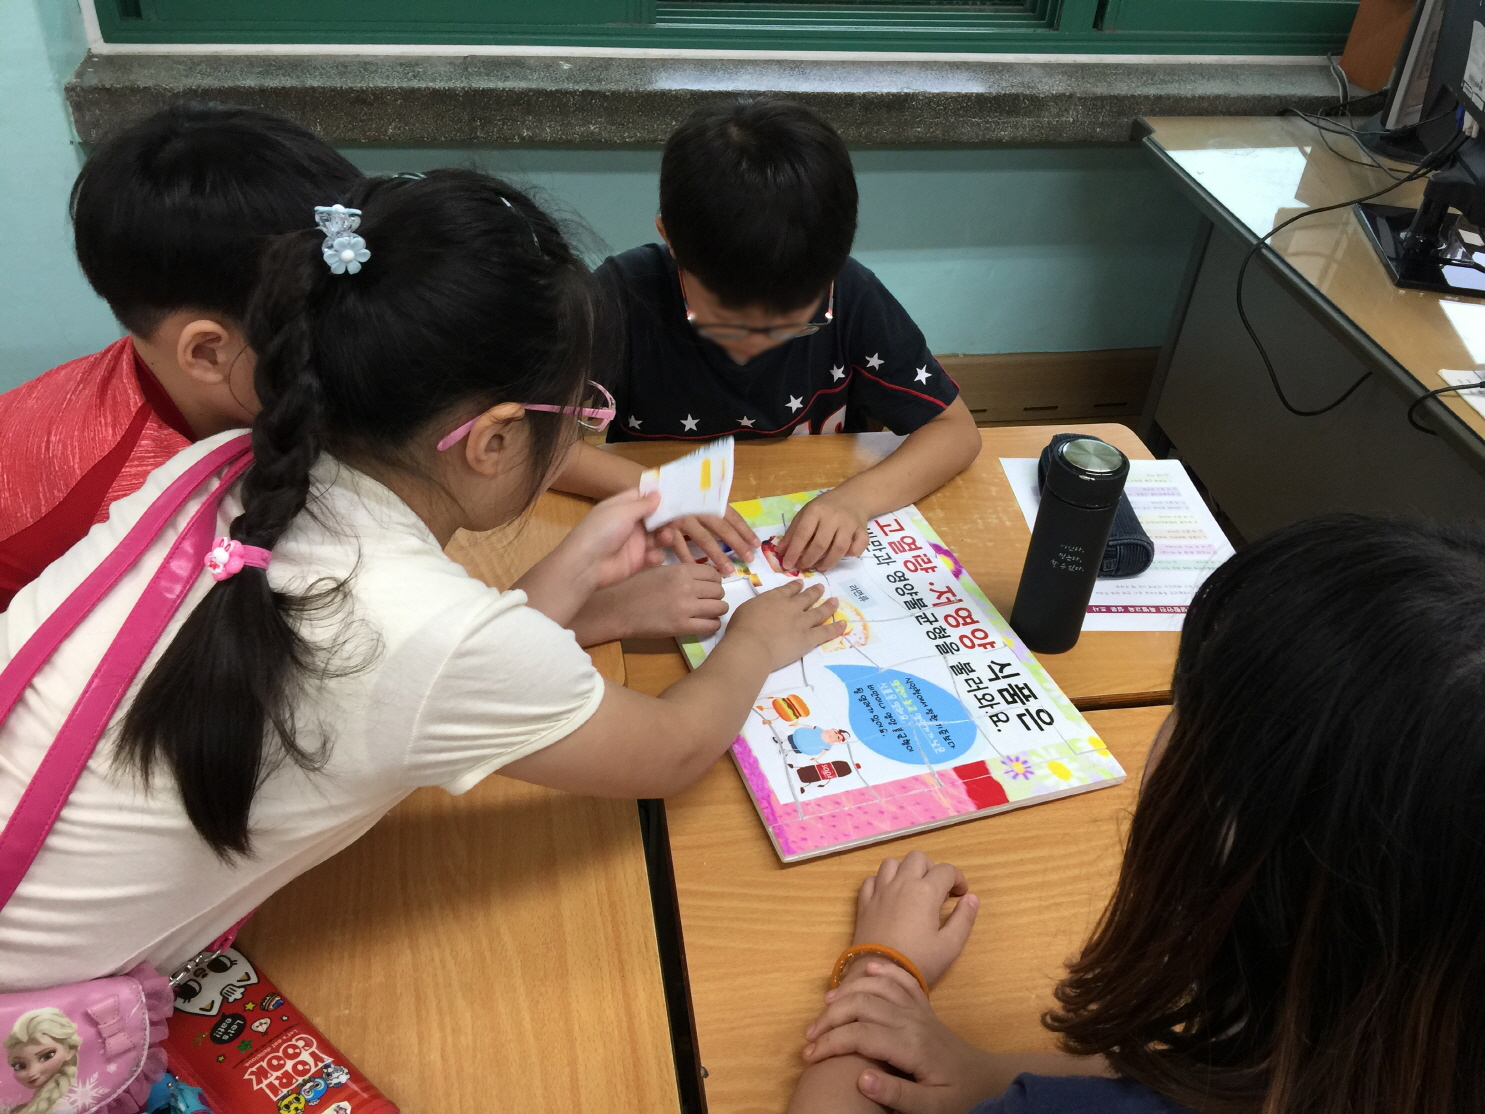 서울 구로구 고척동 세곡초등학교 학생들이 ‘어린이 식생활 안전 특별교육’의 일환으로 건강한 먹거리에 대해 공부하고 있다.  구로구 제공 